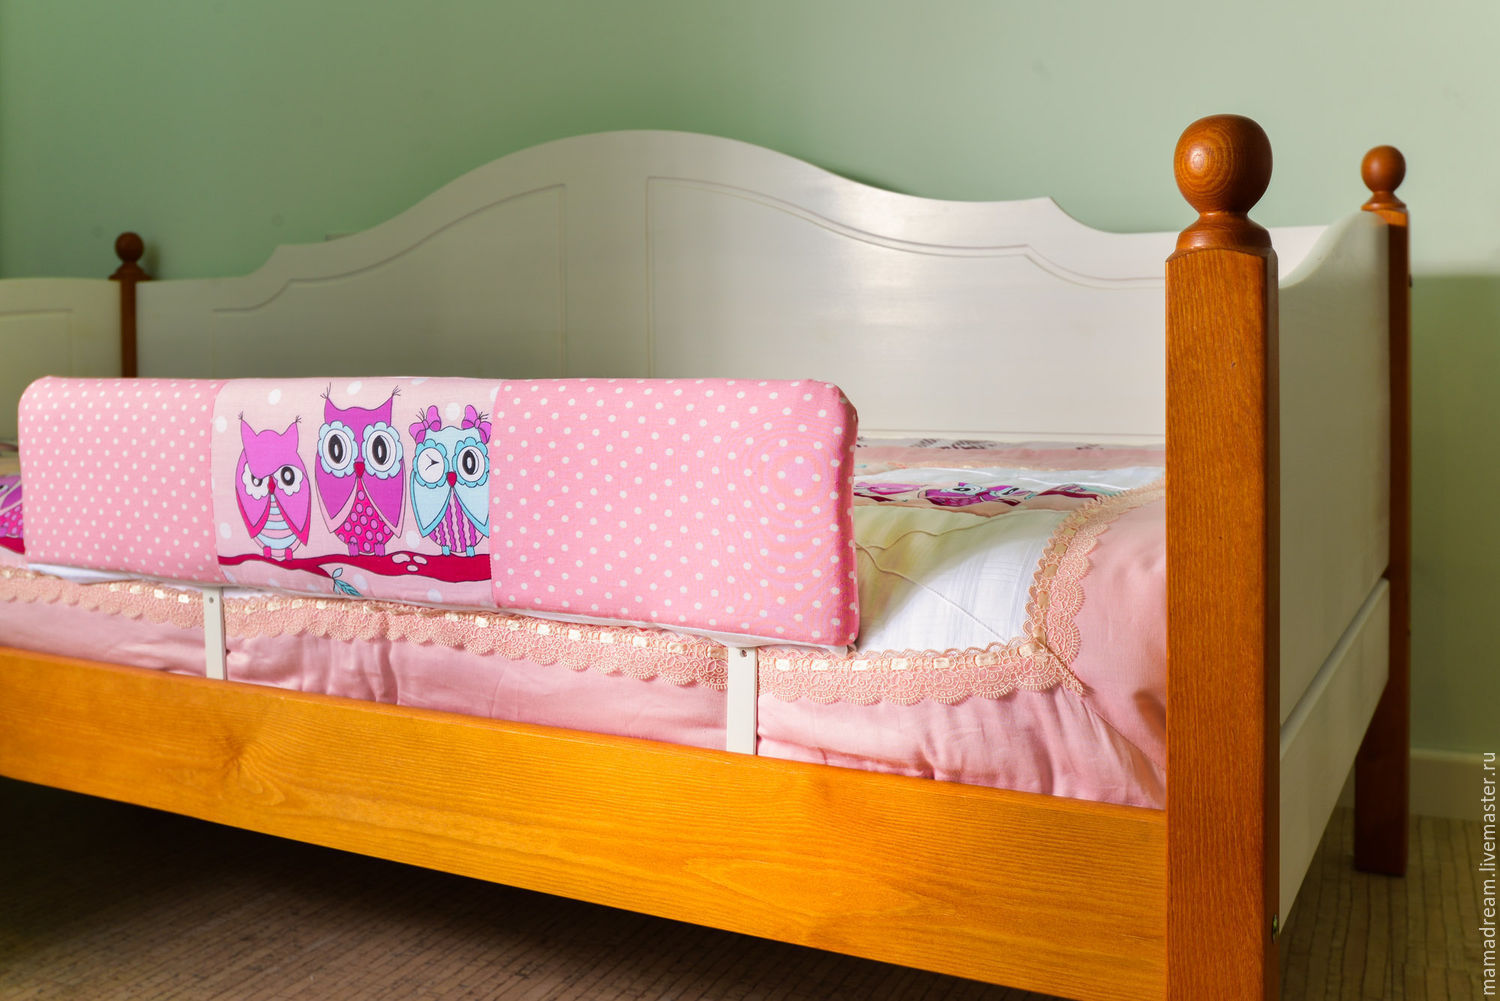 Кровать с бортиками. Бортики для кровати. Бортик на детскую кровать. Бортик для детской кровати. Ограничитель на кровать для детей.